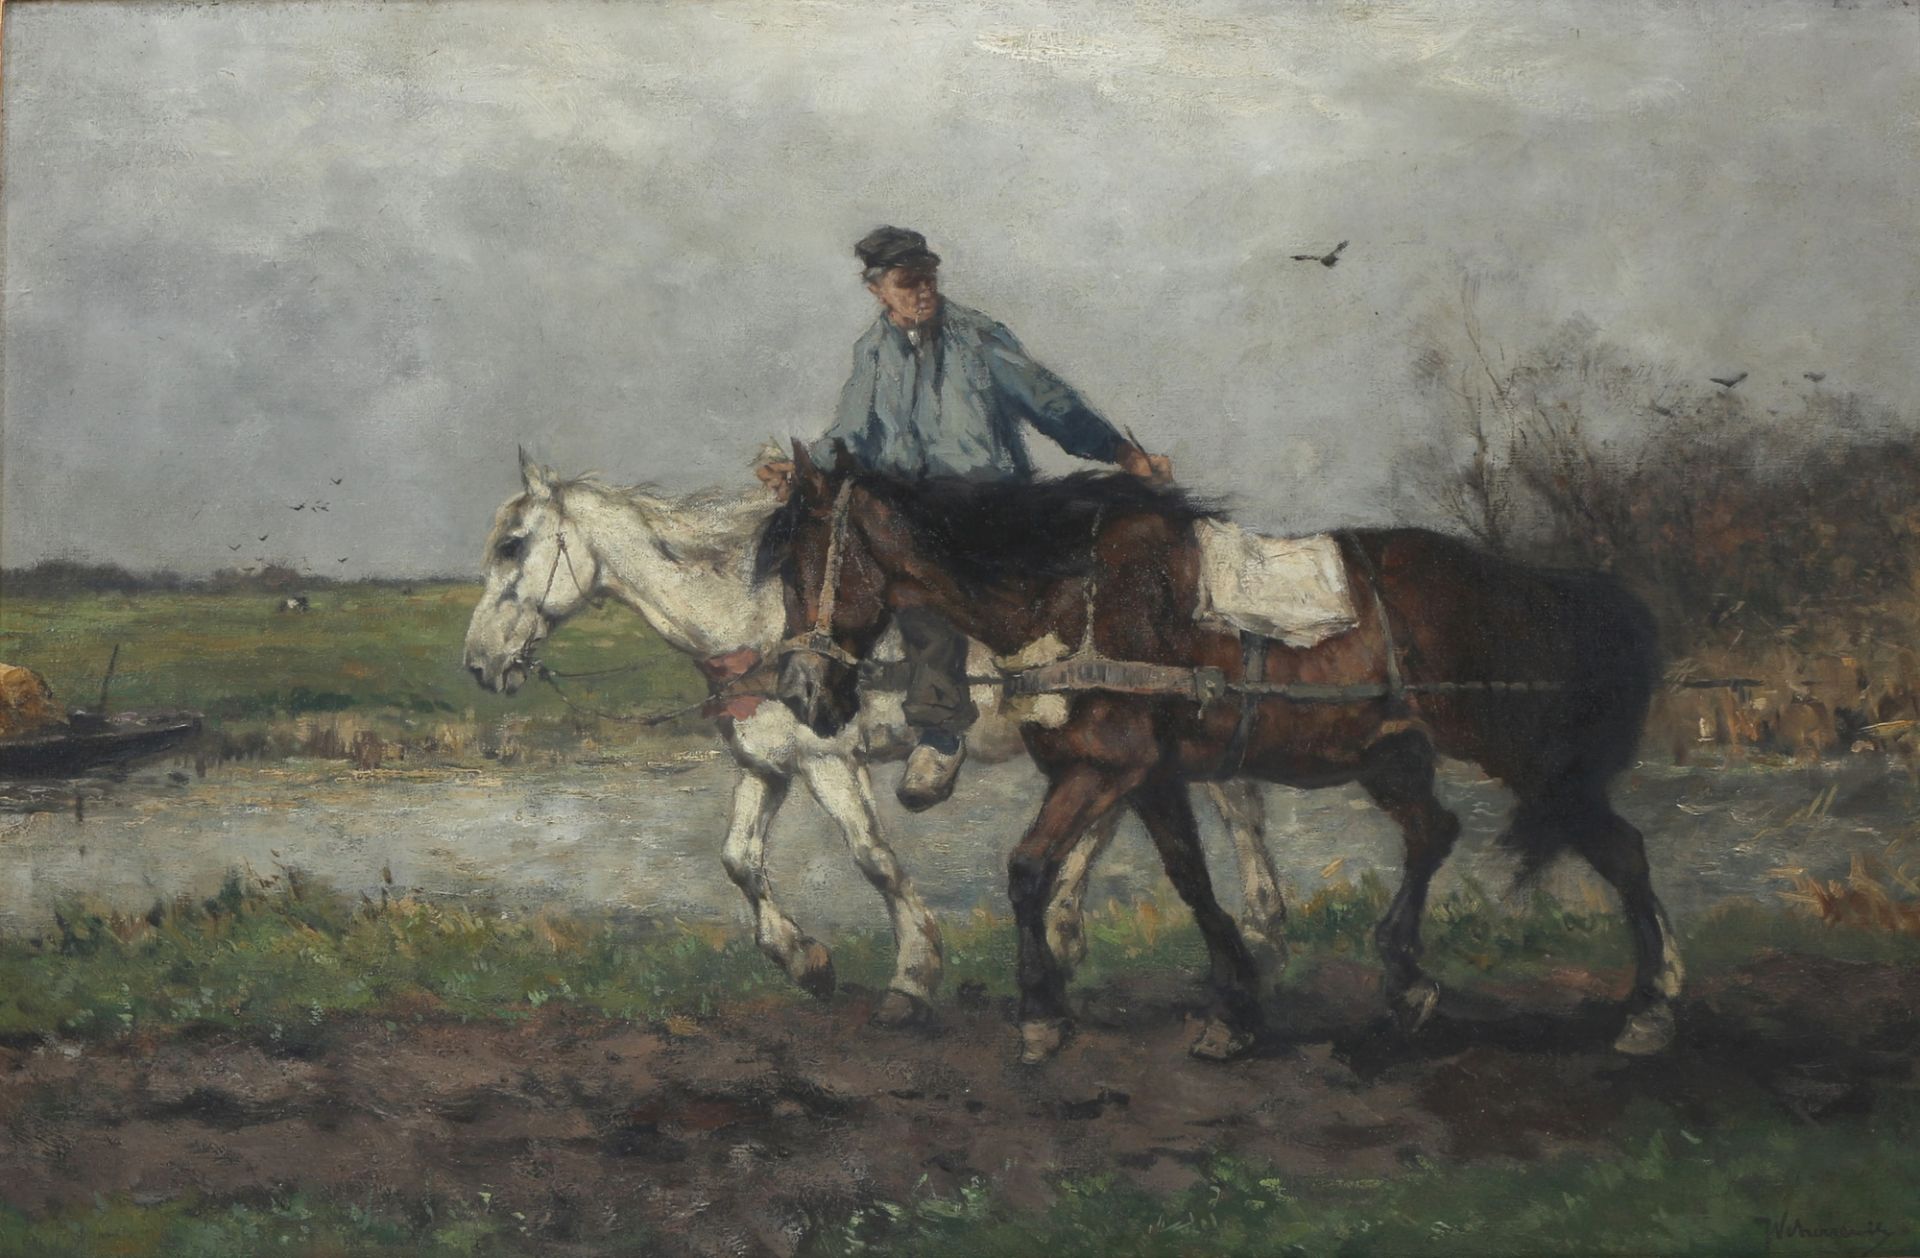 Johan Frederik Cornelius Scherrewitz (1868-1951) heimkehrender Farmer, peasant retouring home,